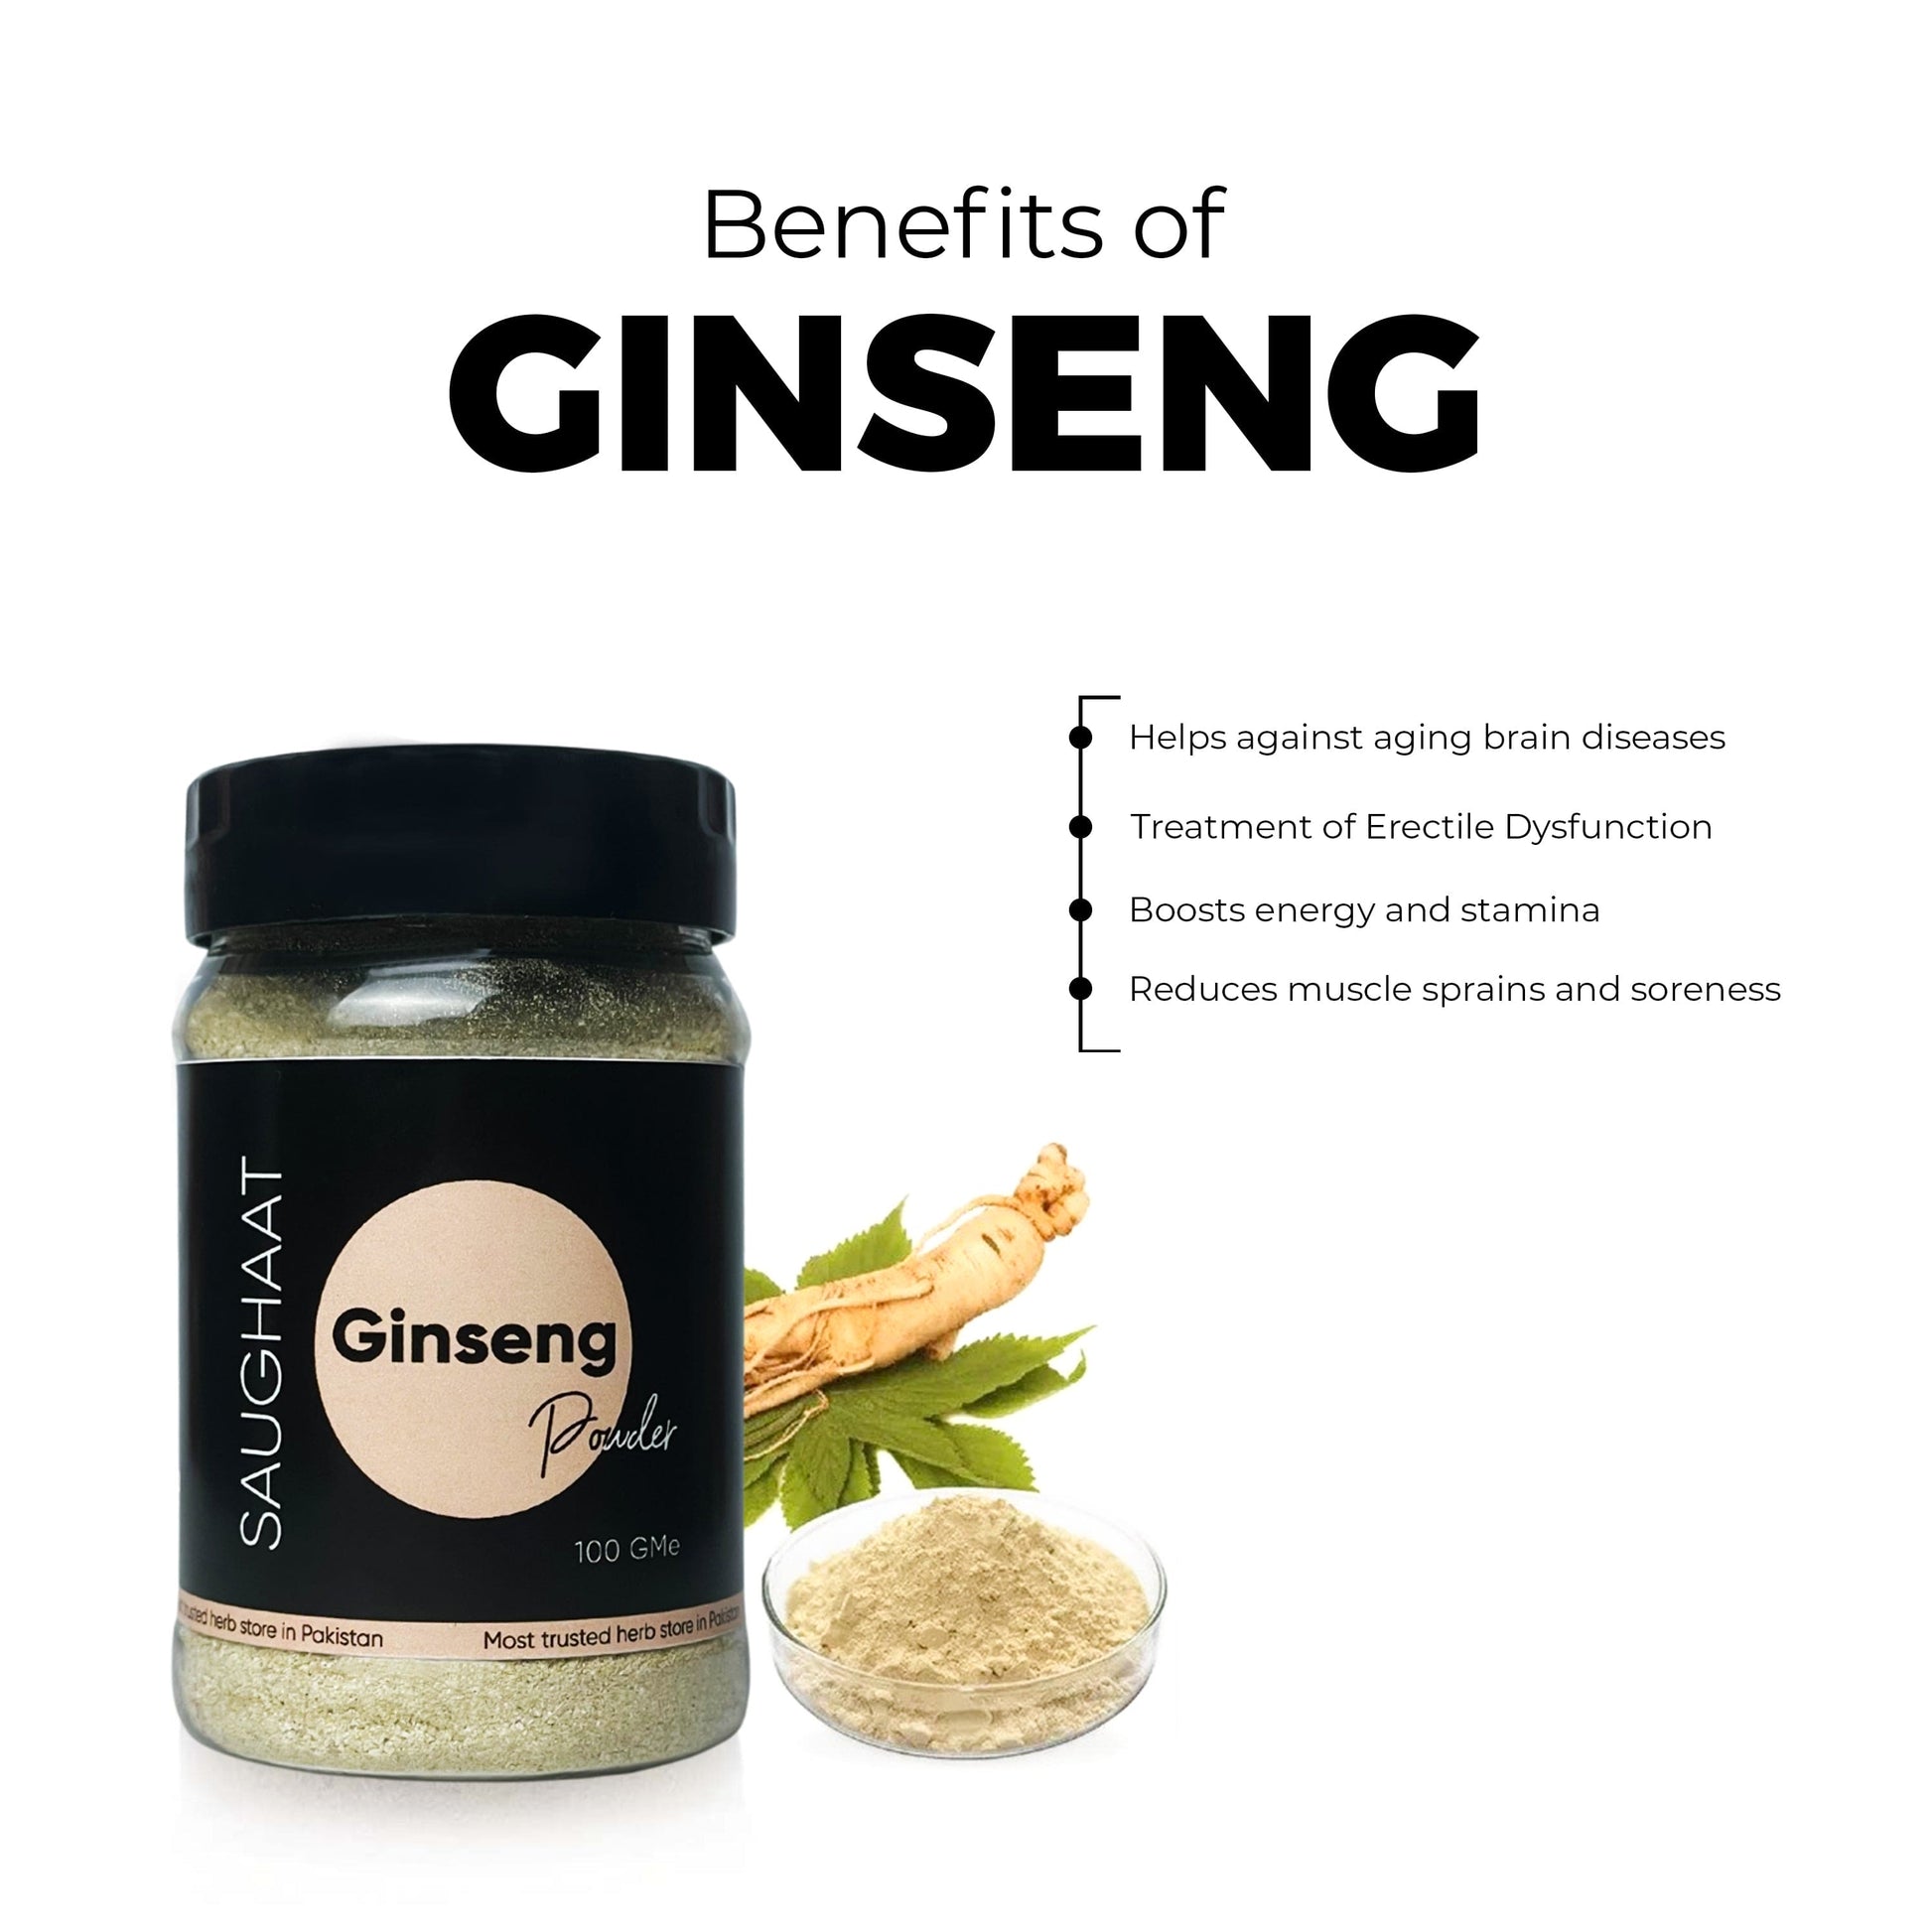 Benefits of Ginseng Powder